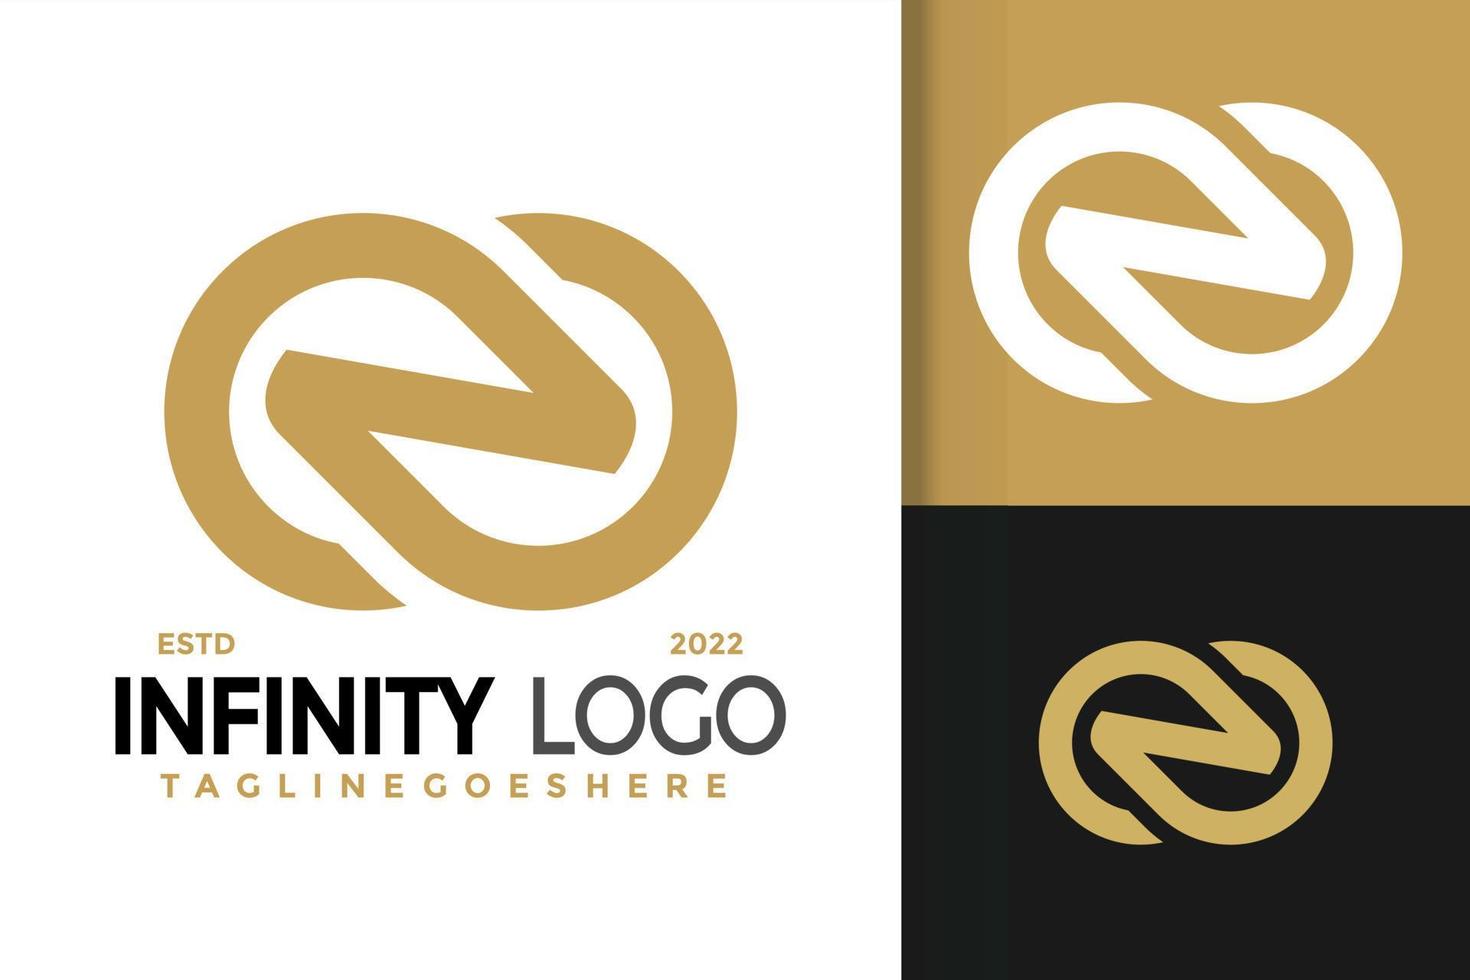 n lettre infini design de logo élégant, vecteur de logos d'identité de marque, logo moderne, modèle d'illustration vectorielle de dessins de logo